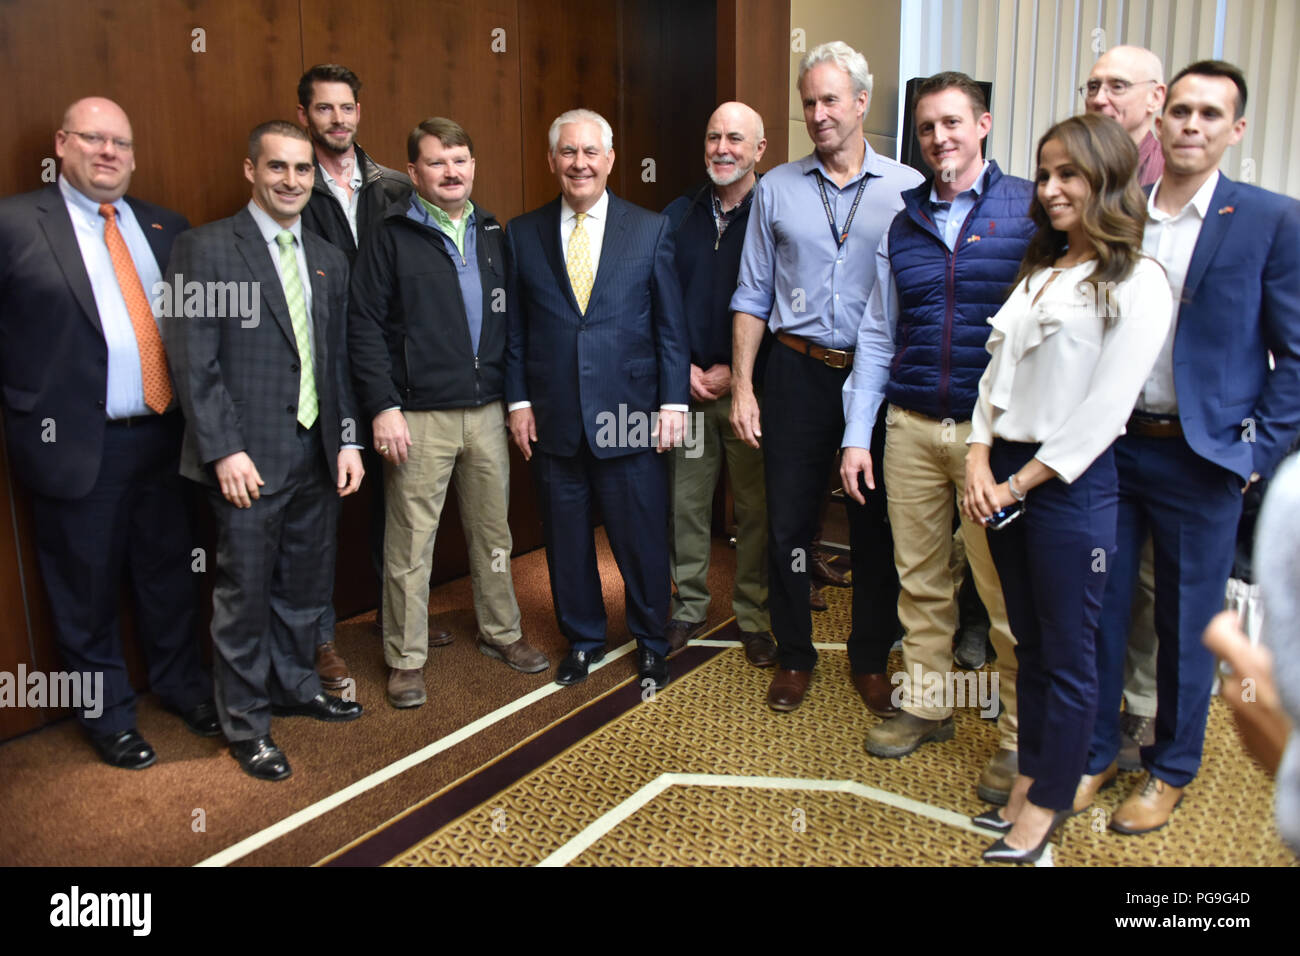 La secrétaire d'État des États-Unis, Rex Tillerson pose pour une photo avec les membres du personnel de l'ambassade des Etats-Unis à Ankara, Turquie le 16 février 2018. Banque D'Images